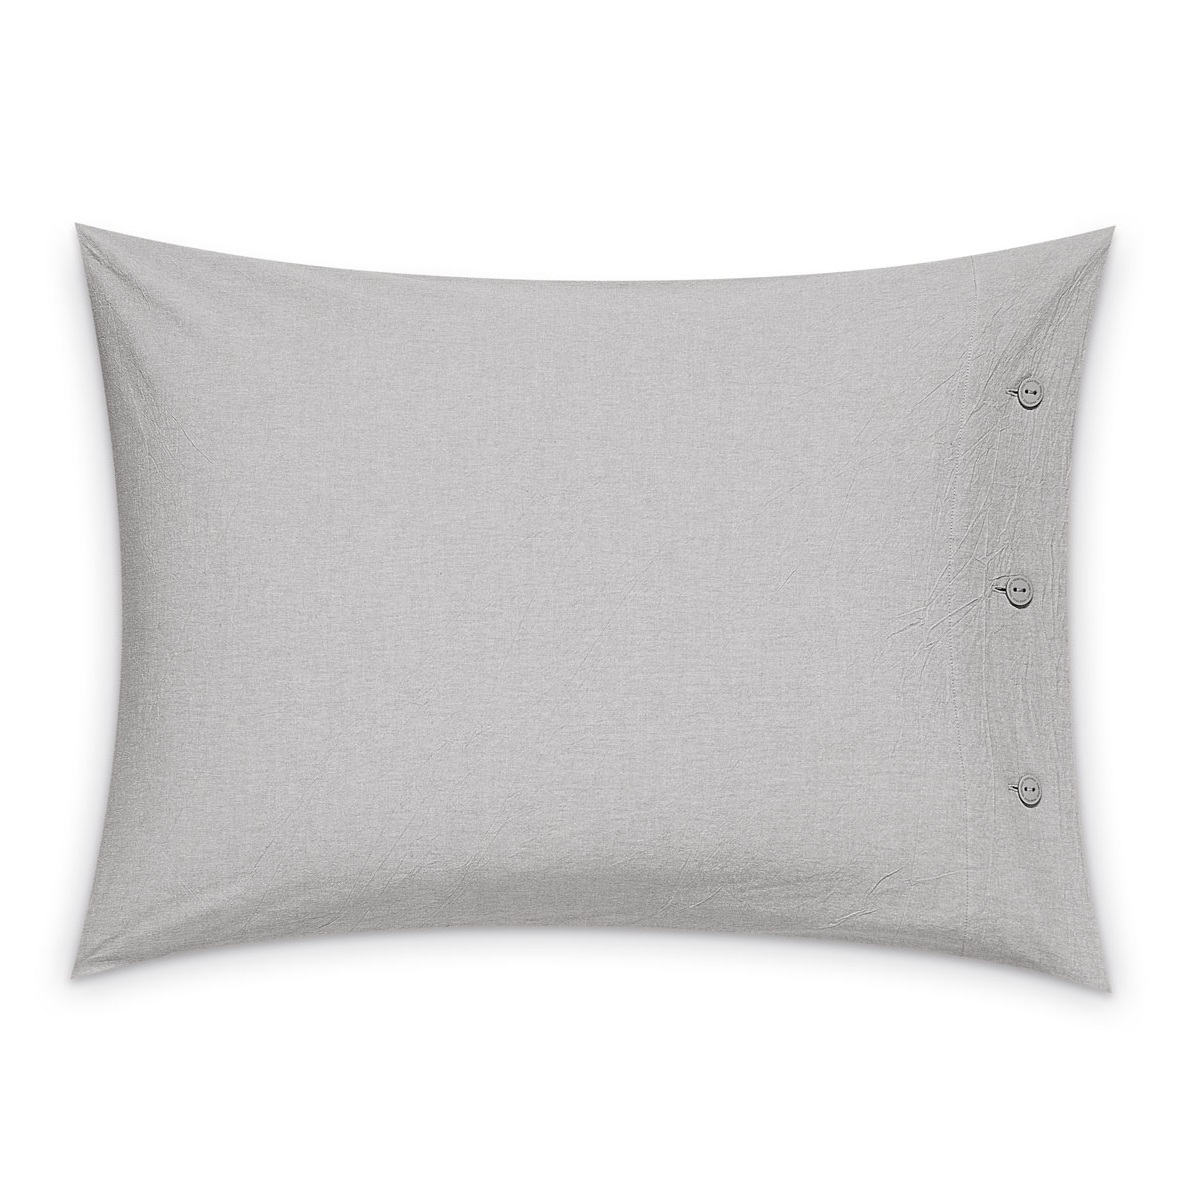 Комплект постельного белья Prime Prive Смоген Двуспальный кинг сайз светло-серый, размер Кинг сайз - фото 9